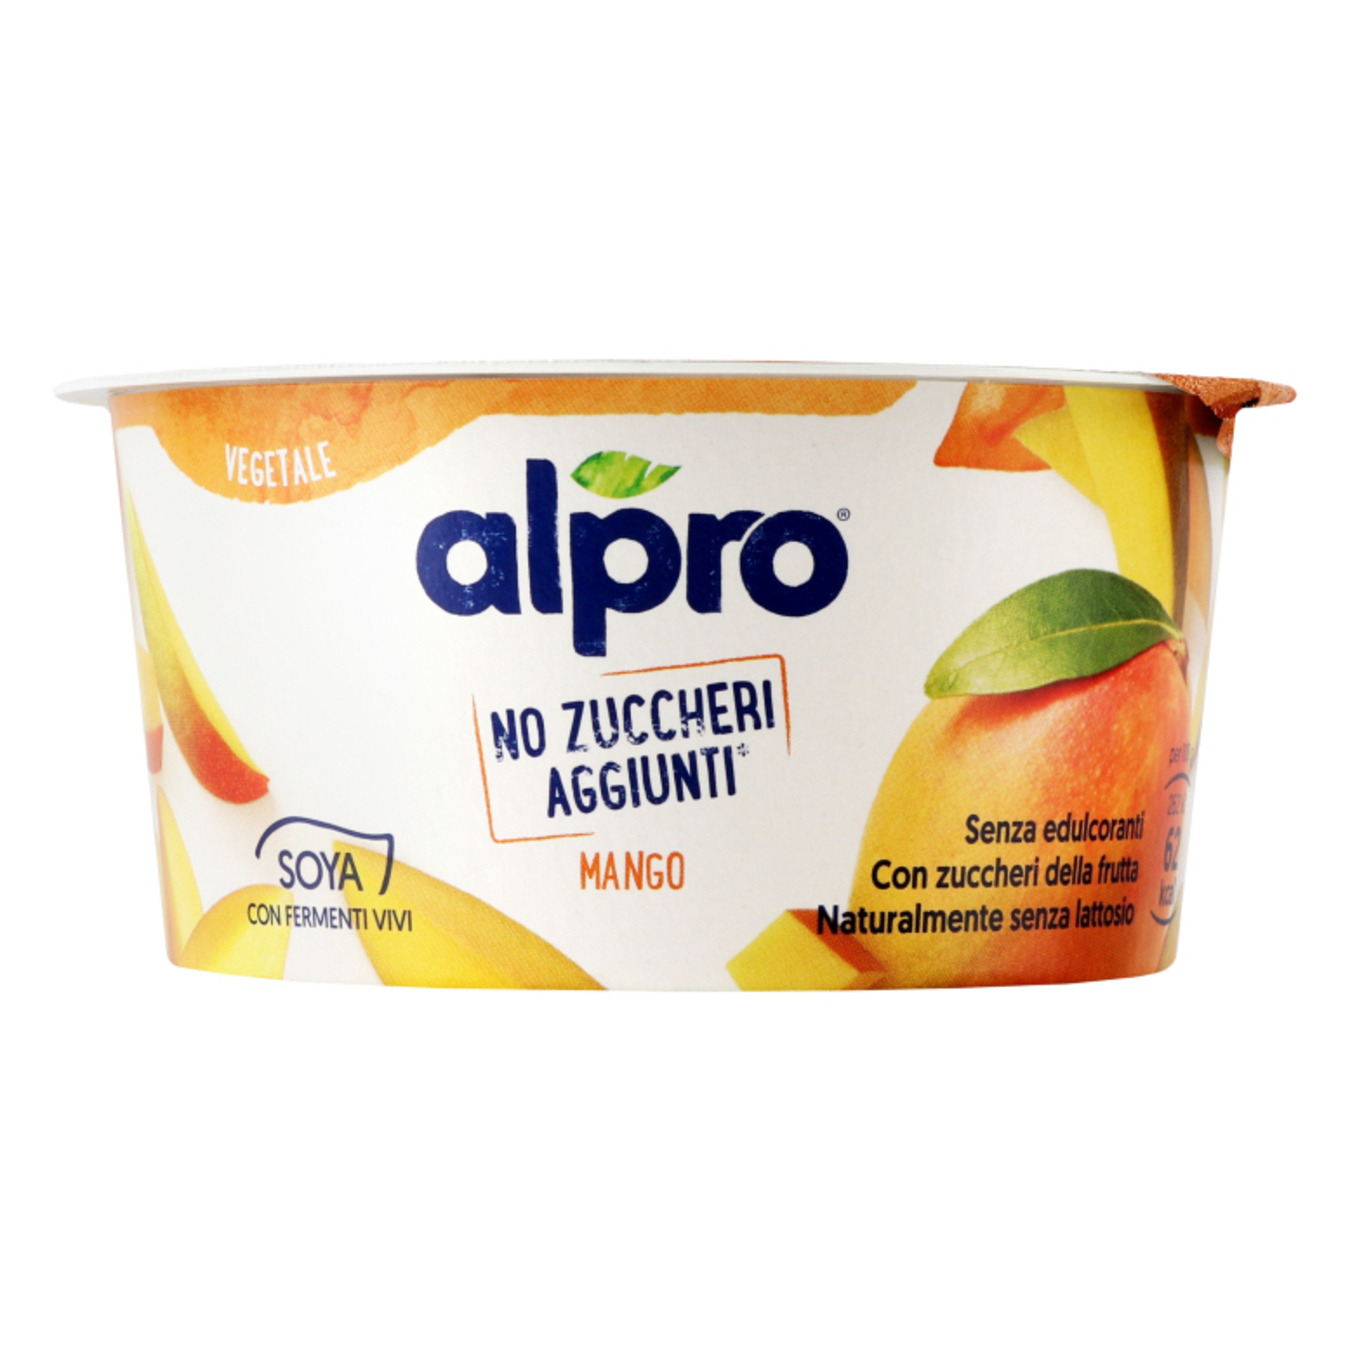 Продукт Alpro соєвий ферментований без цукру манго стакан 2% 135г